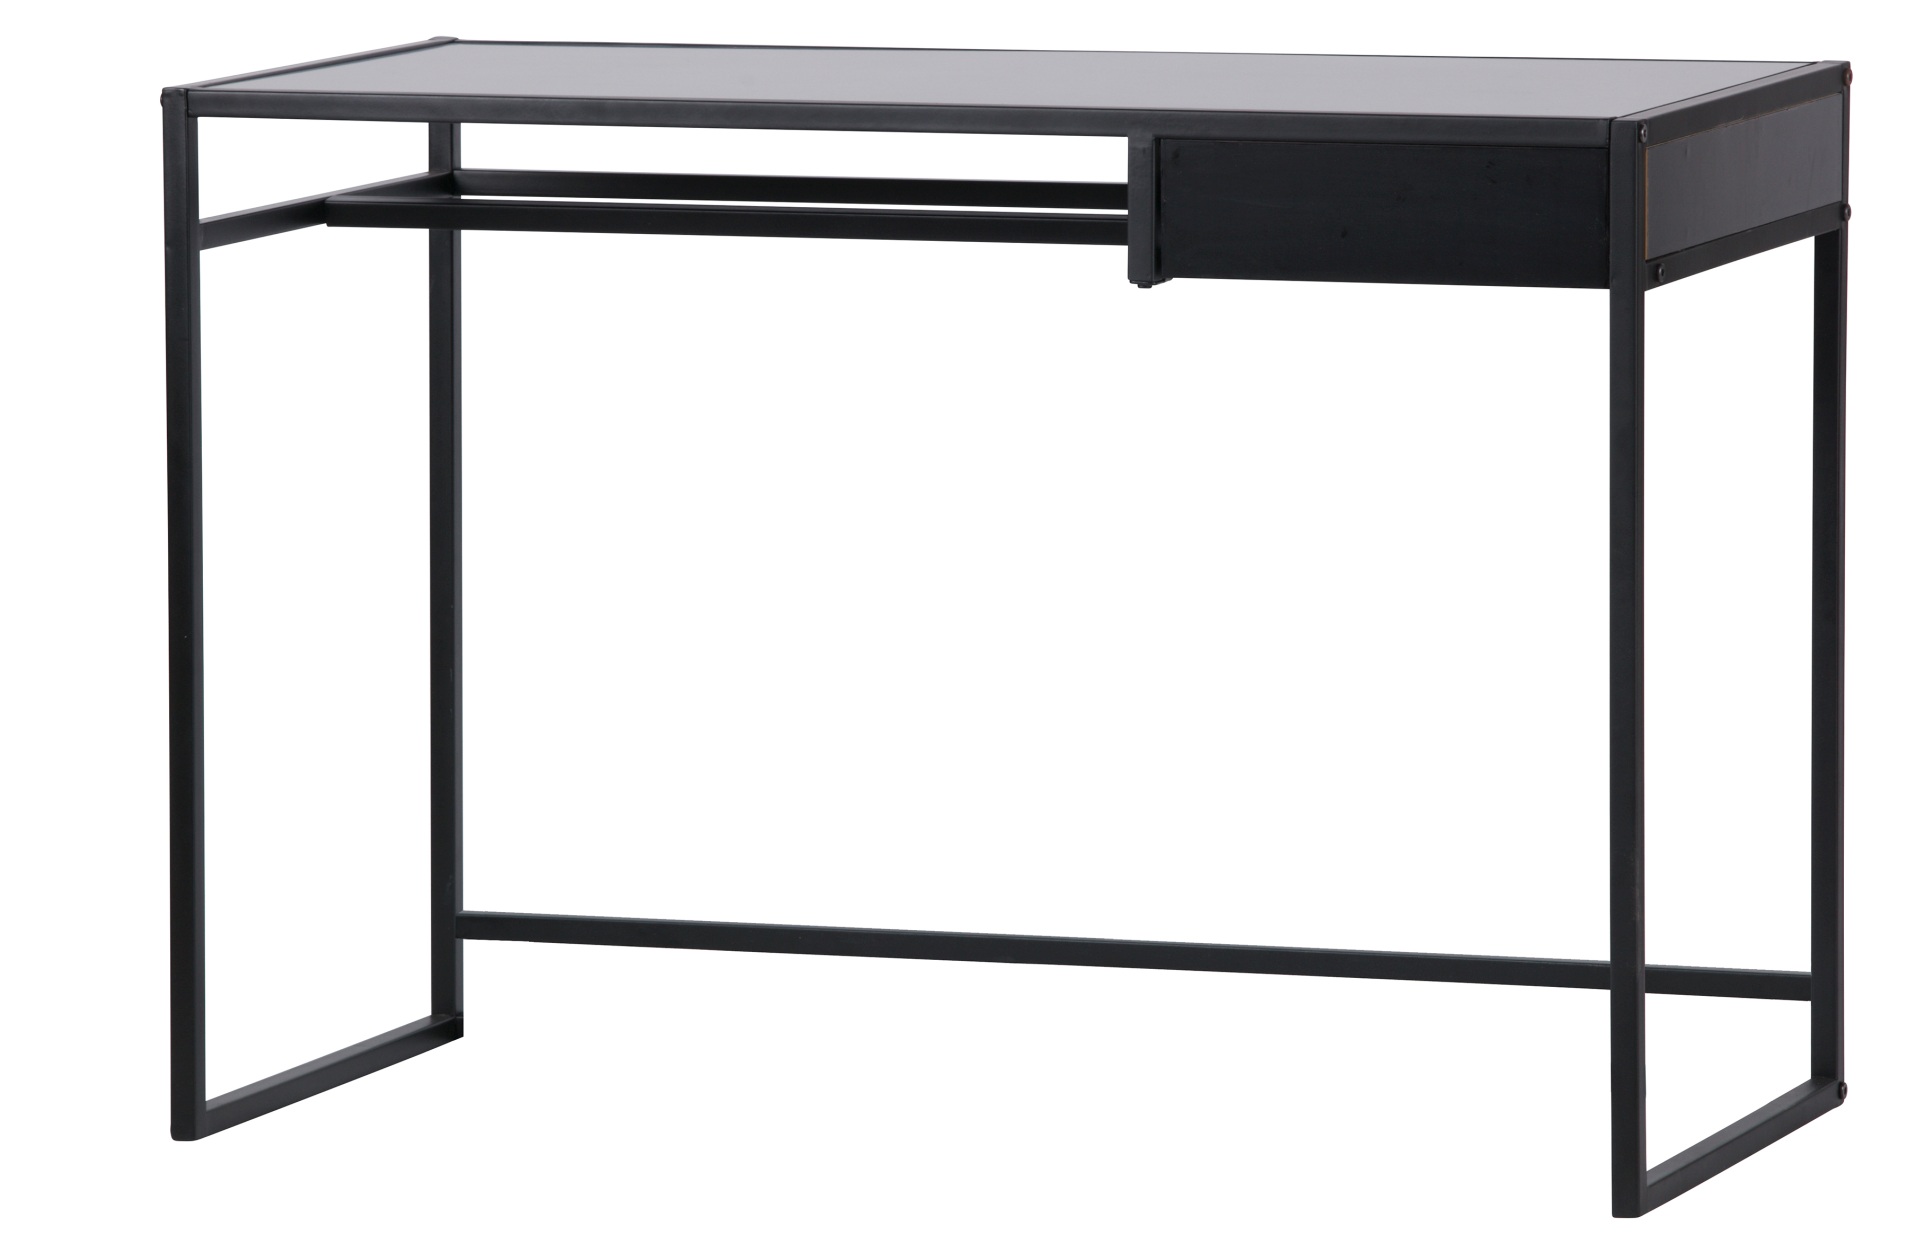 Der Schreibtisch Teun besitzt ein industrielles Design. Gefertigt wurde er aus Metall, welches eine schwarze Farbe besitzt. Der Schreibtisch verfügt über eine kleine Schublade.